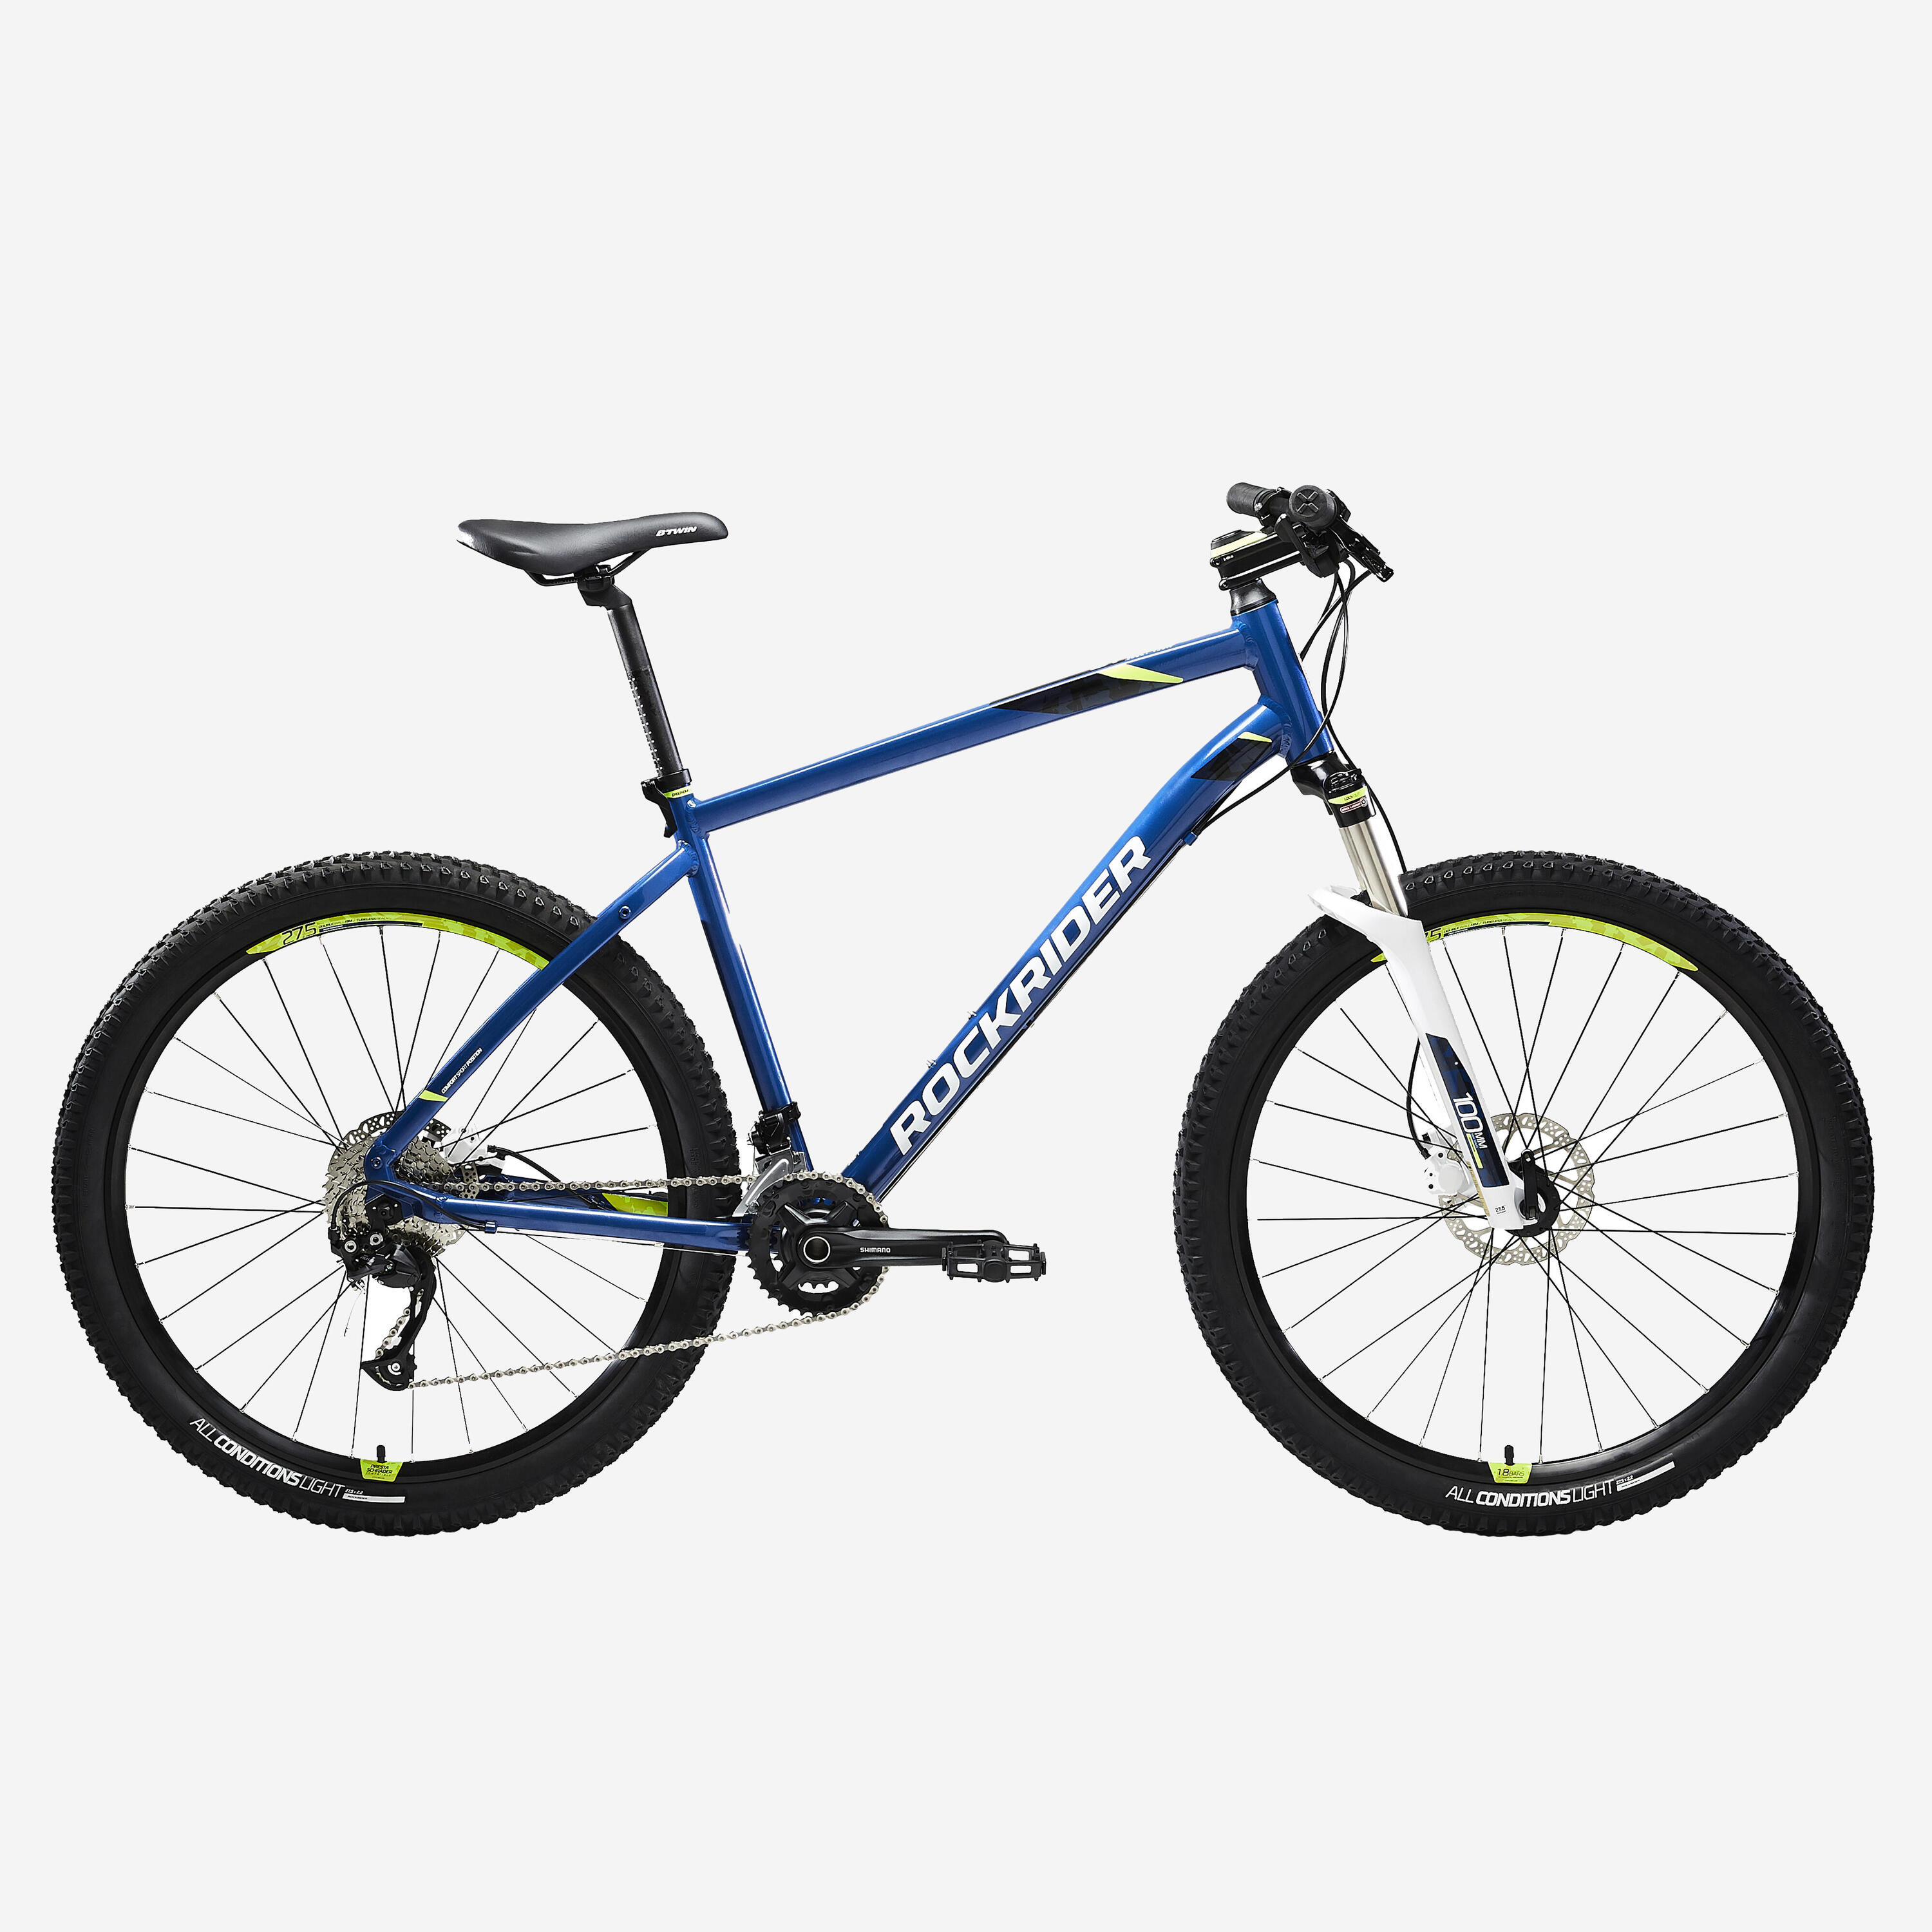 ROCKRIDER 27.5" Mountain Bike ST 540 - Blue